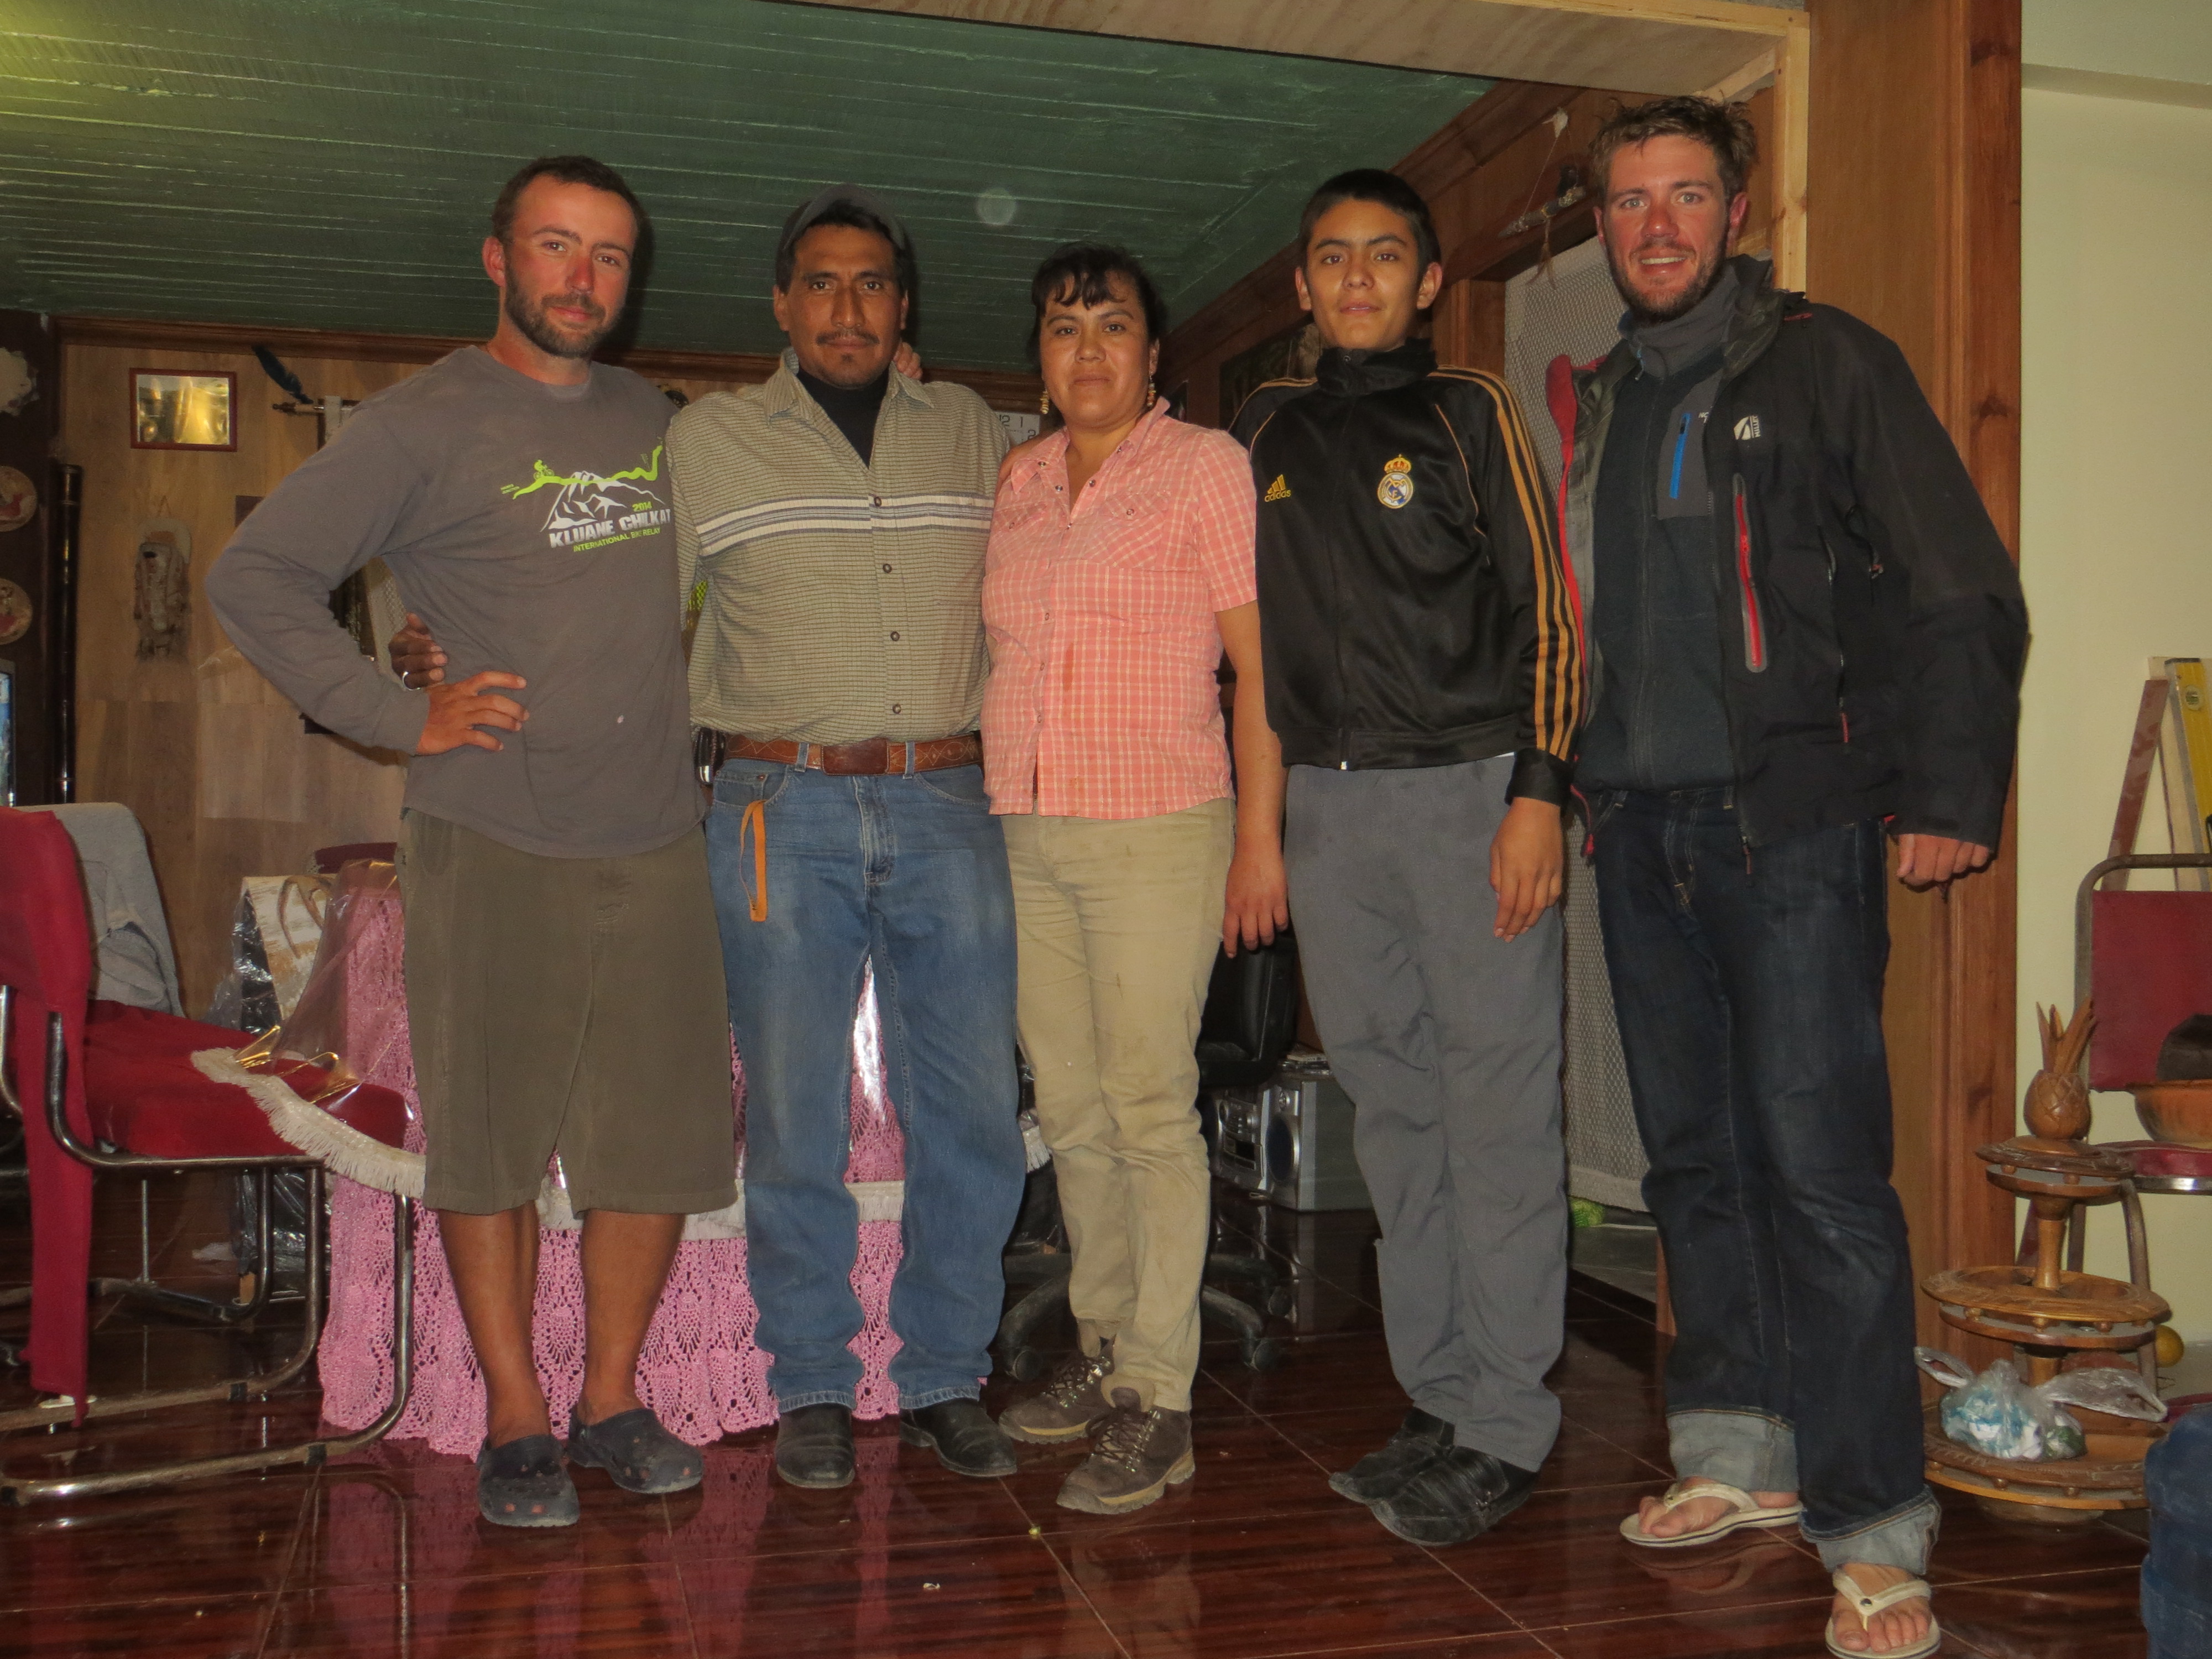 Une douche et un repas offert avec de dormir à l'église, merci à cette sympathique famille de Tlahuelilpan.